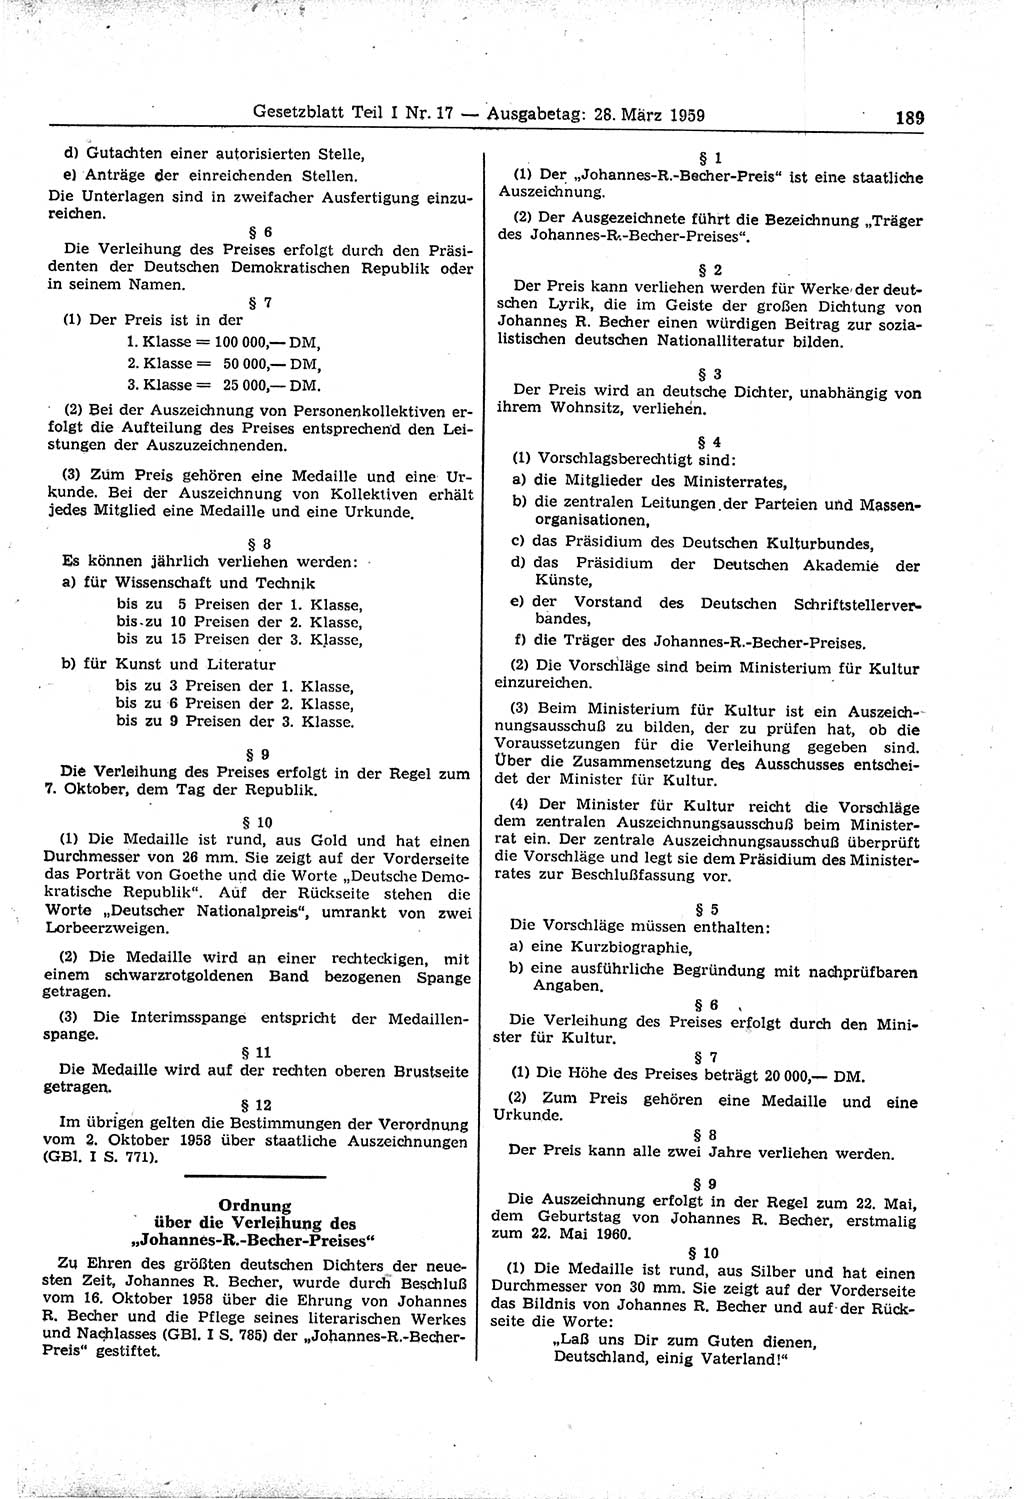 Gesetzblatt (GBl.) der Deutschen Demokratischen Republik (DDR) Teil Ⅰ 1959, Seite 189 (GBl. DDR Ⅰ 1959, S. 189)